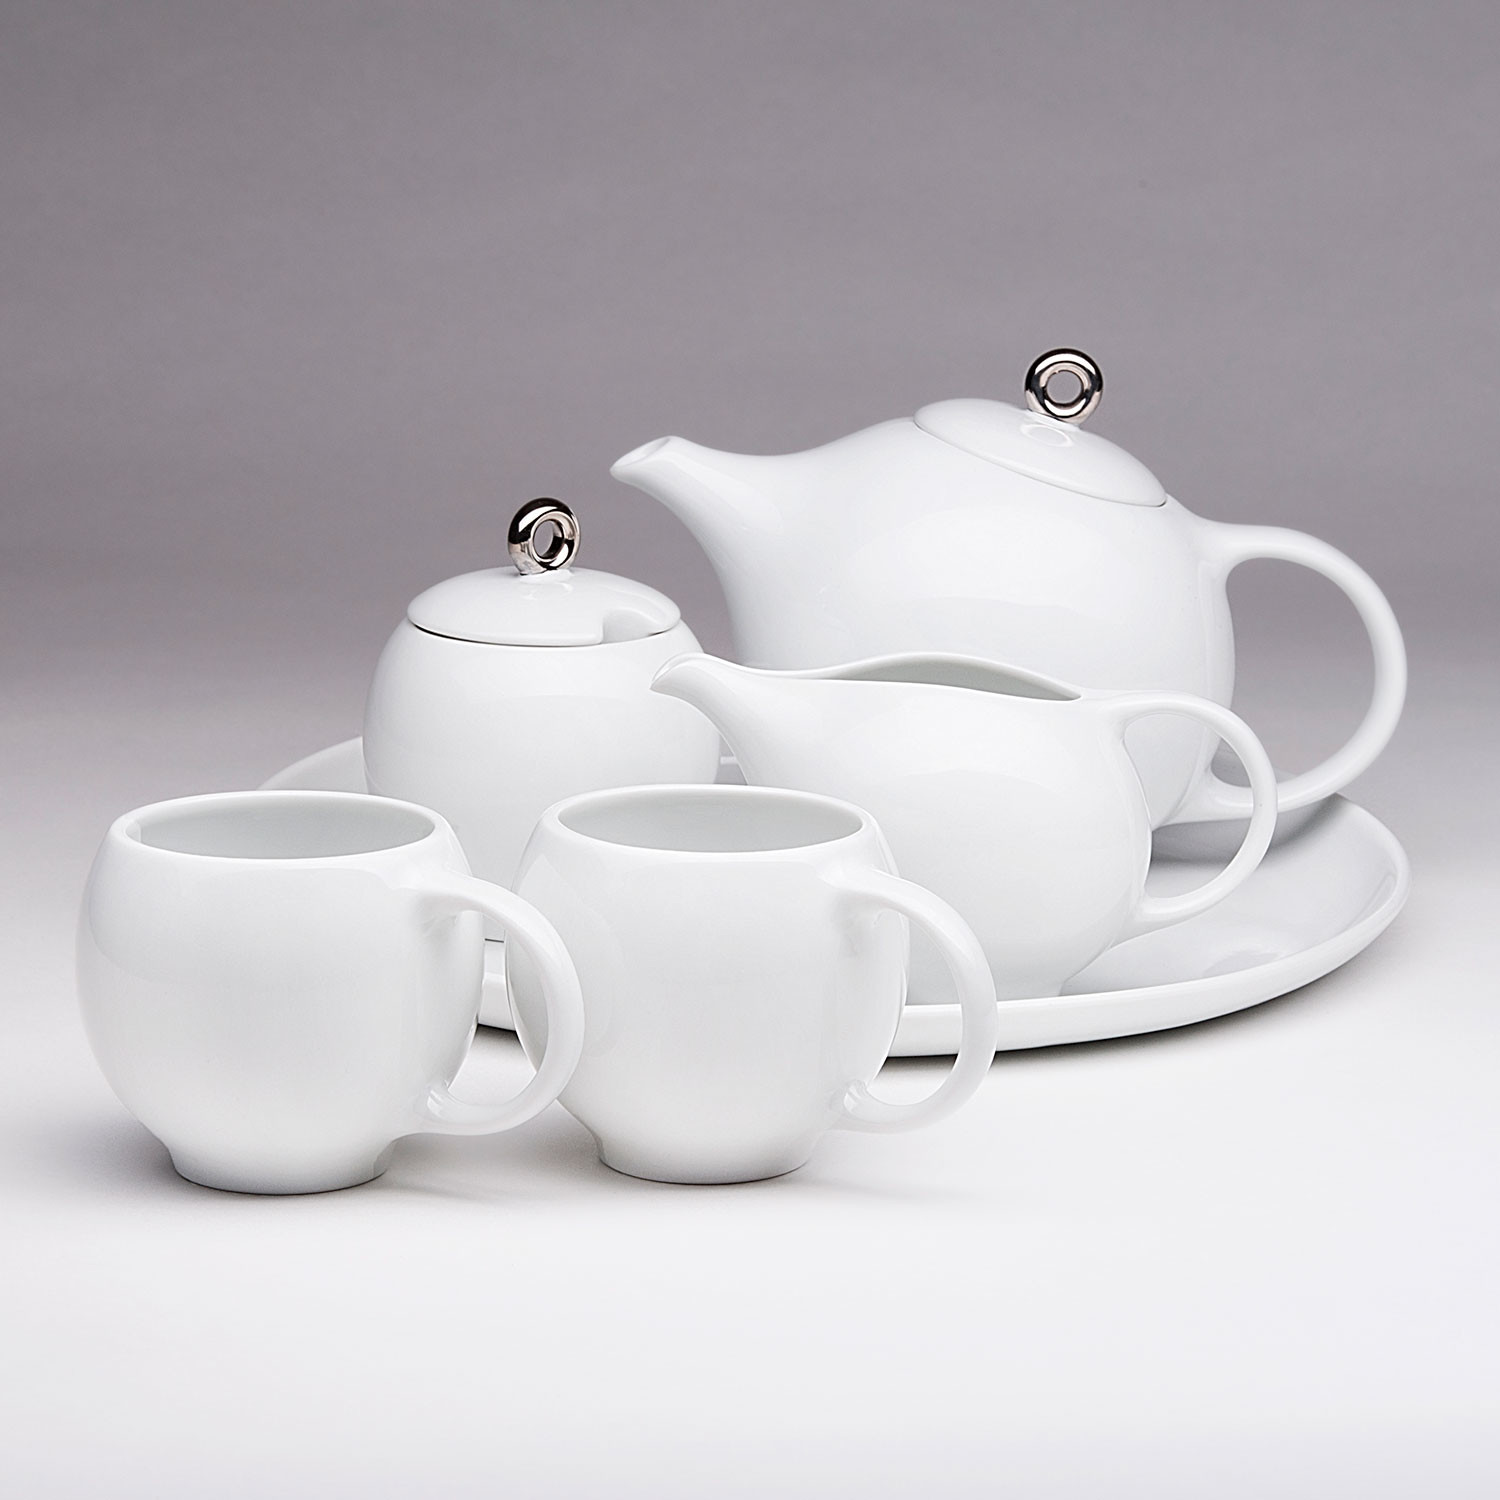 Eva 6 Piece Tea Set White Porcelain Maia Ming Designs Touch Of Modern